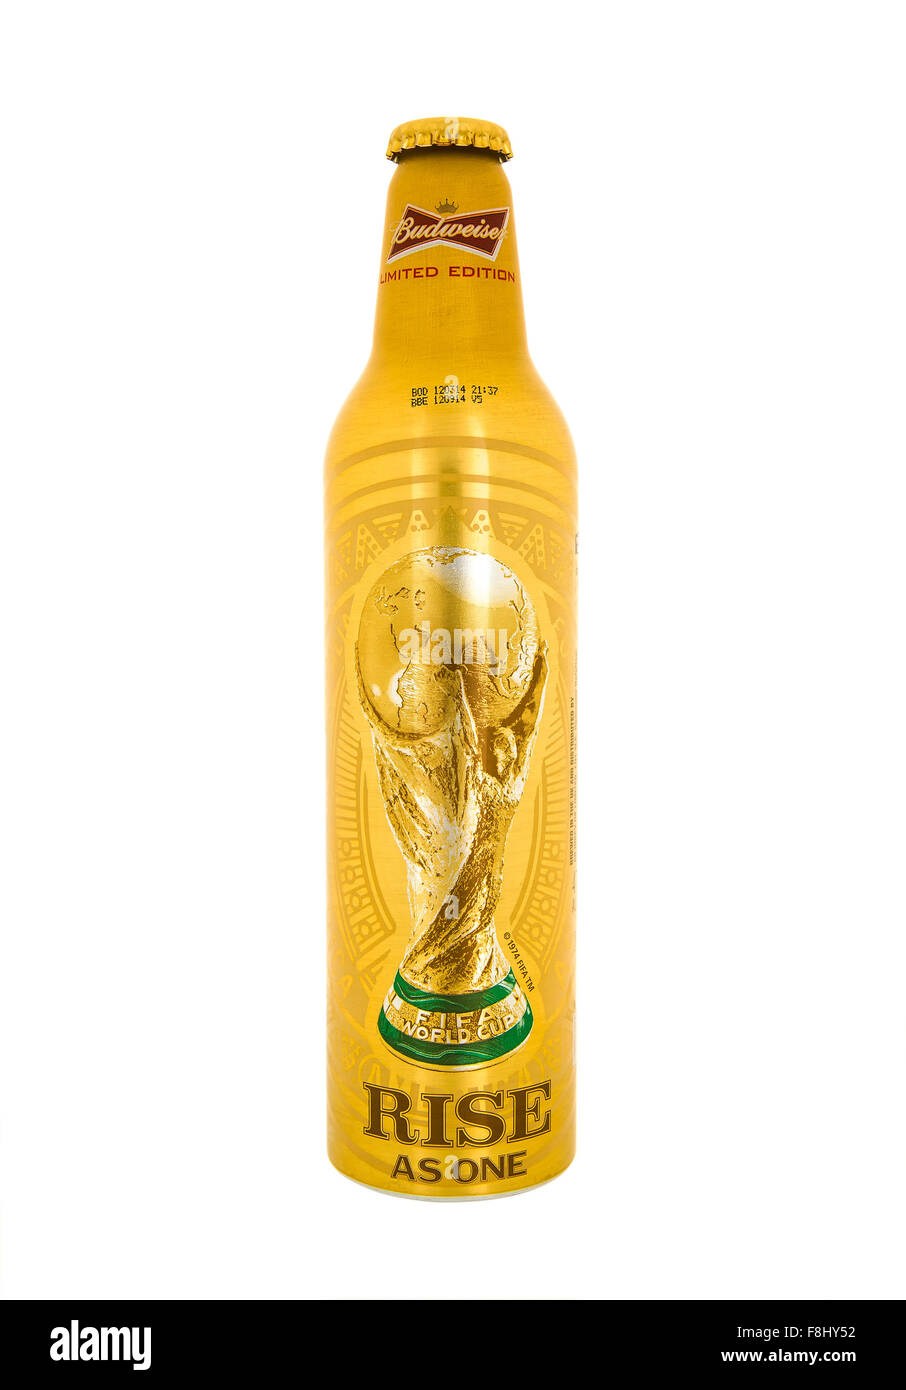 Bouteille de bière Budweiser en édition limitée pour la Coupe du Monde de Football FIFA 2014 sur fond blanc Banque D'Images